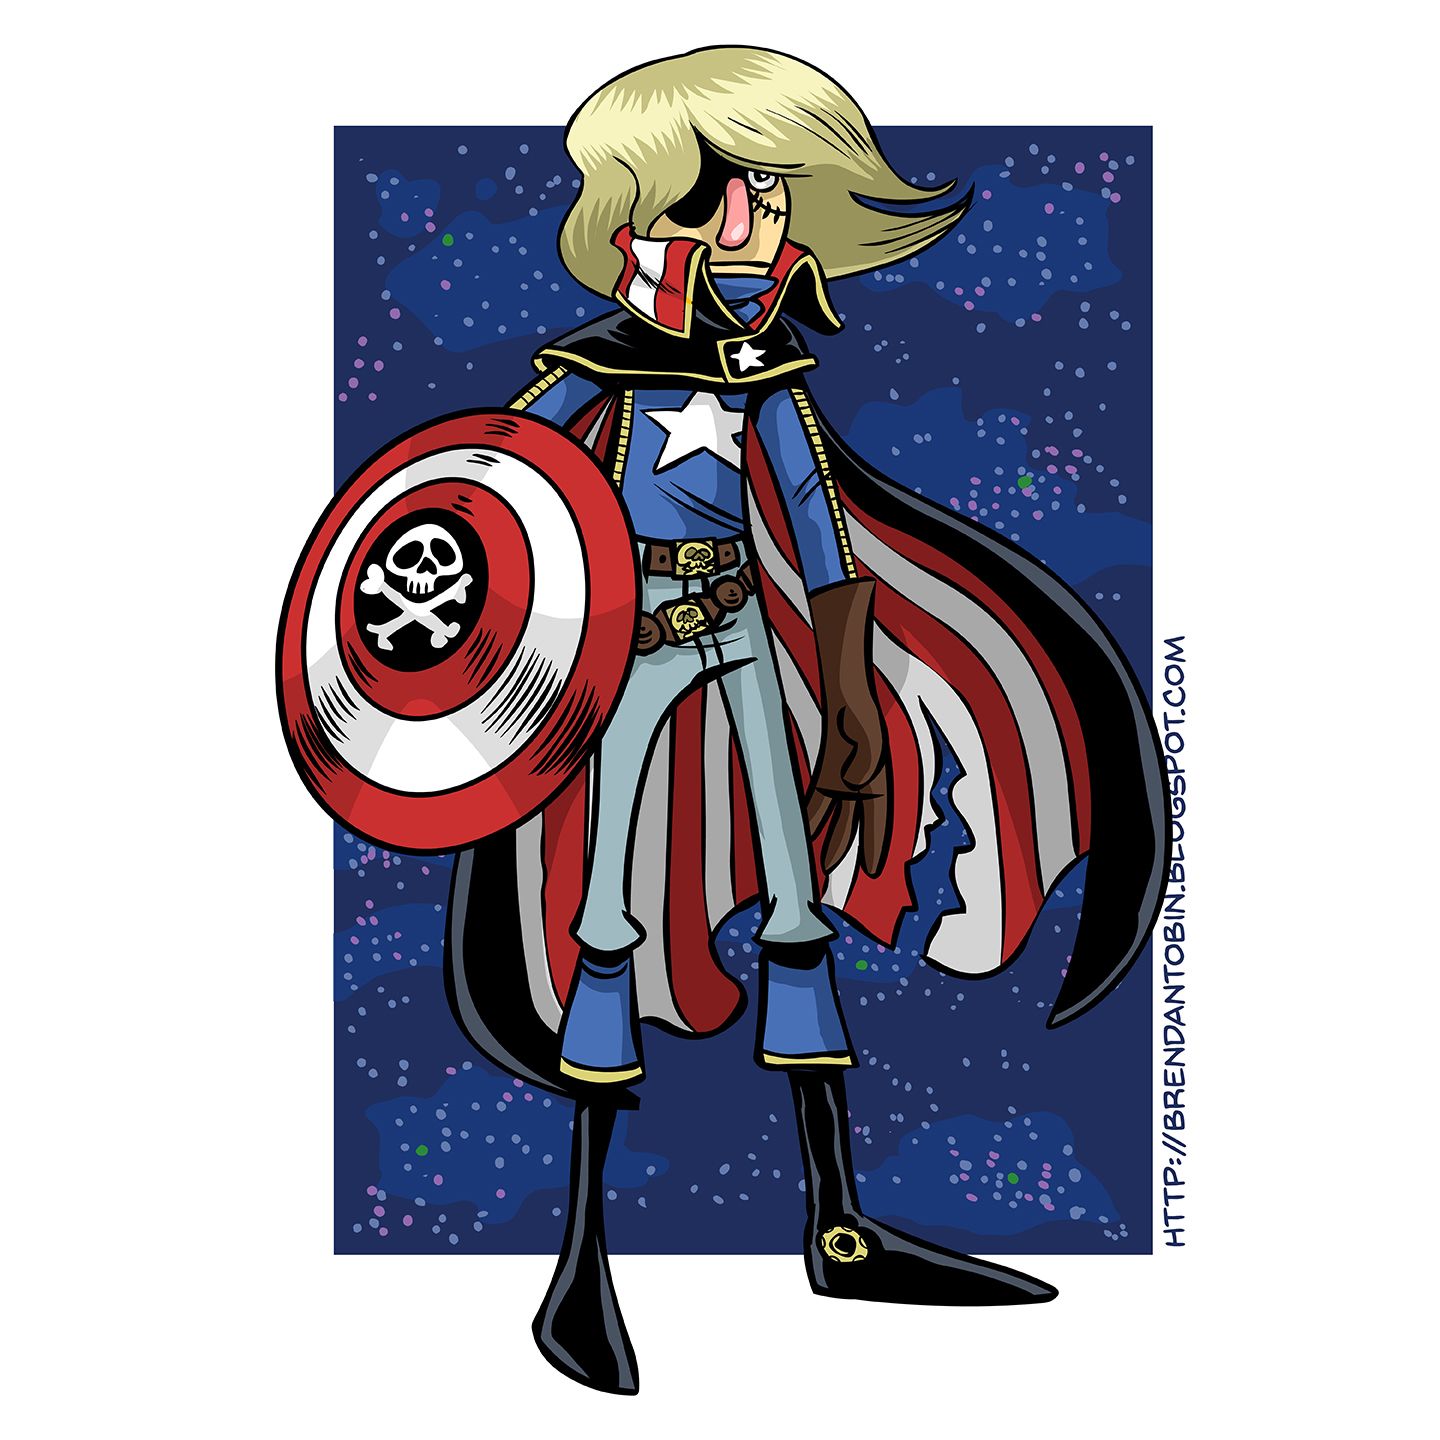 Capitán América como Capitán Harlock